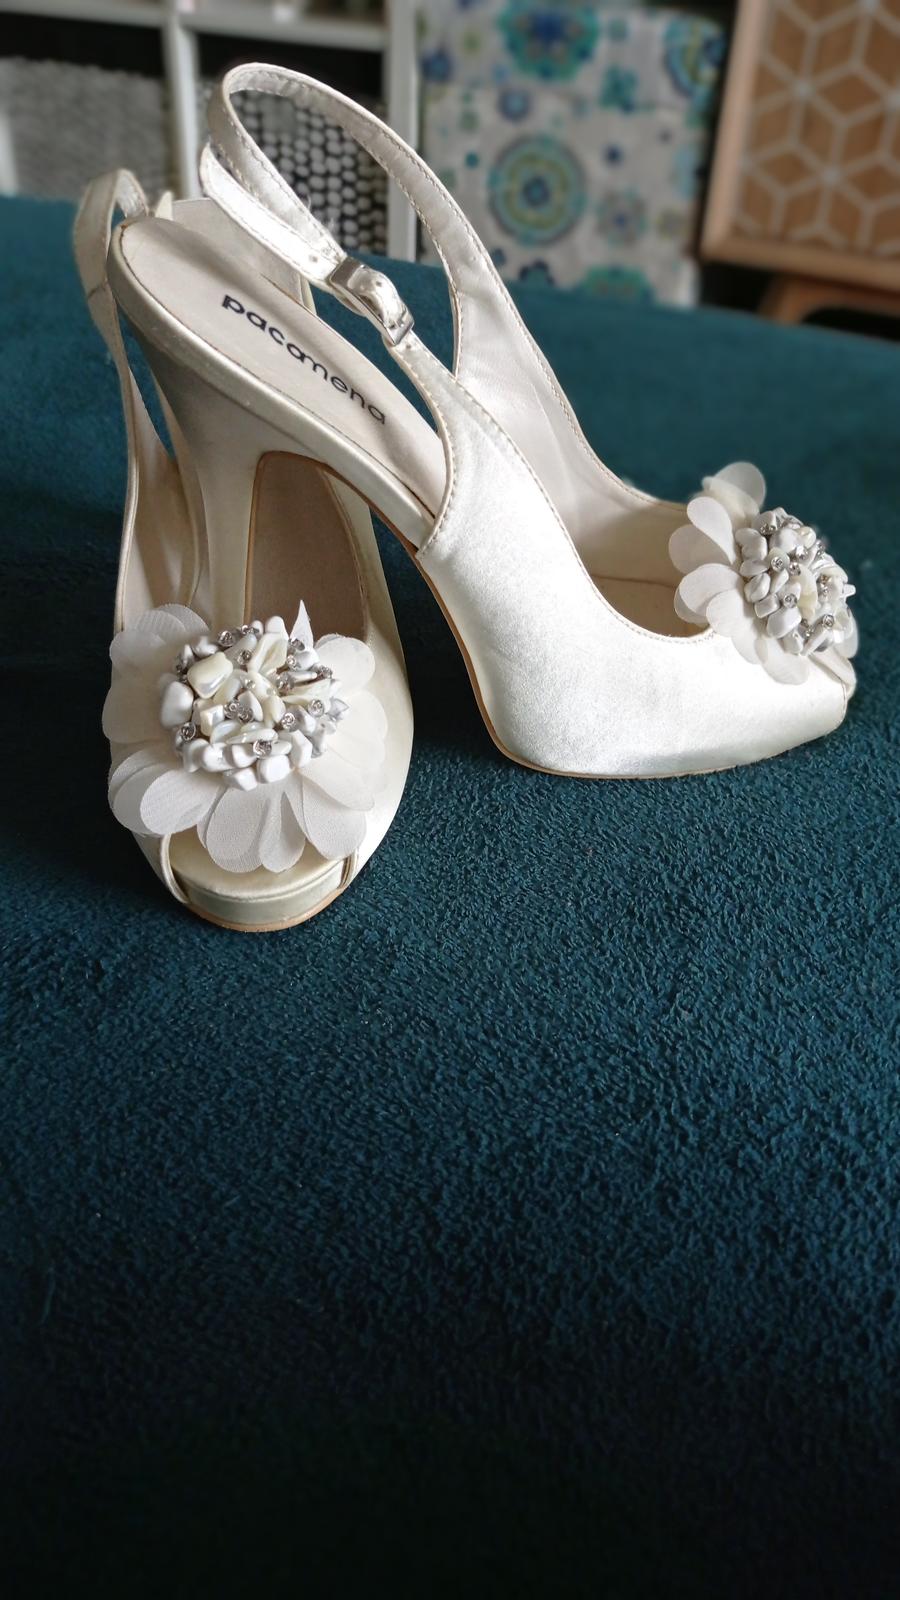 Svatební boty, Menbur (Paconema), 38, ivory - Obrázek č. 1